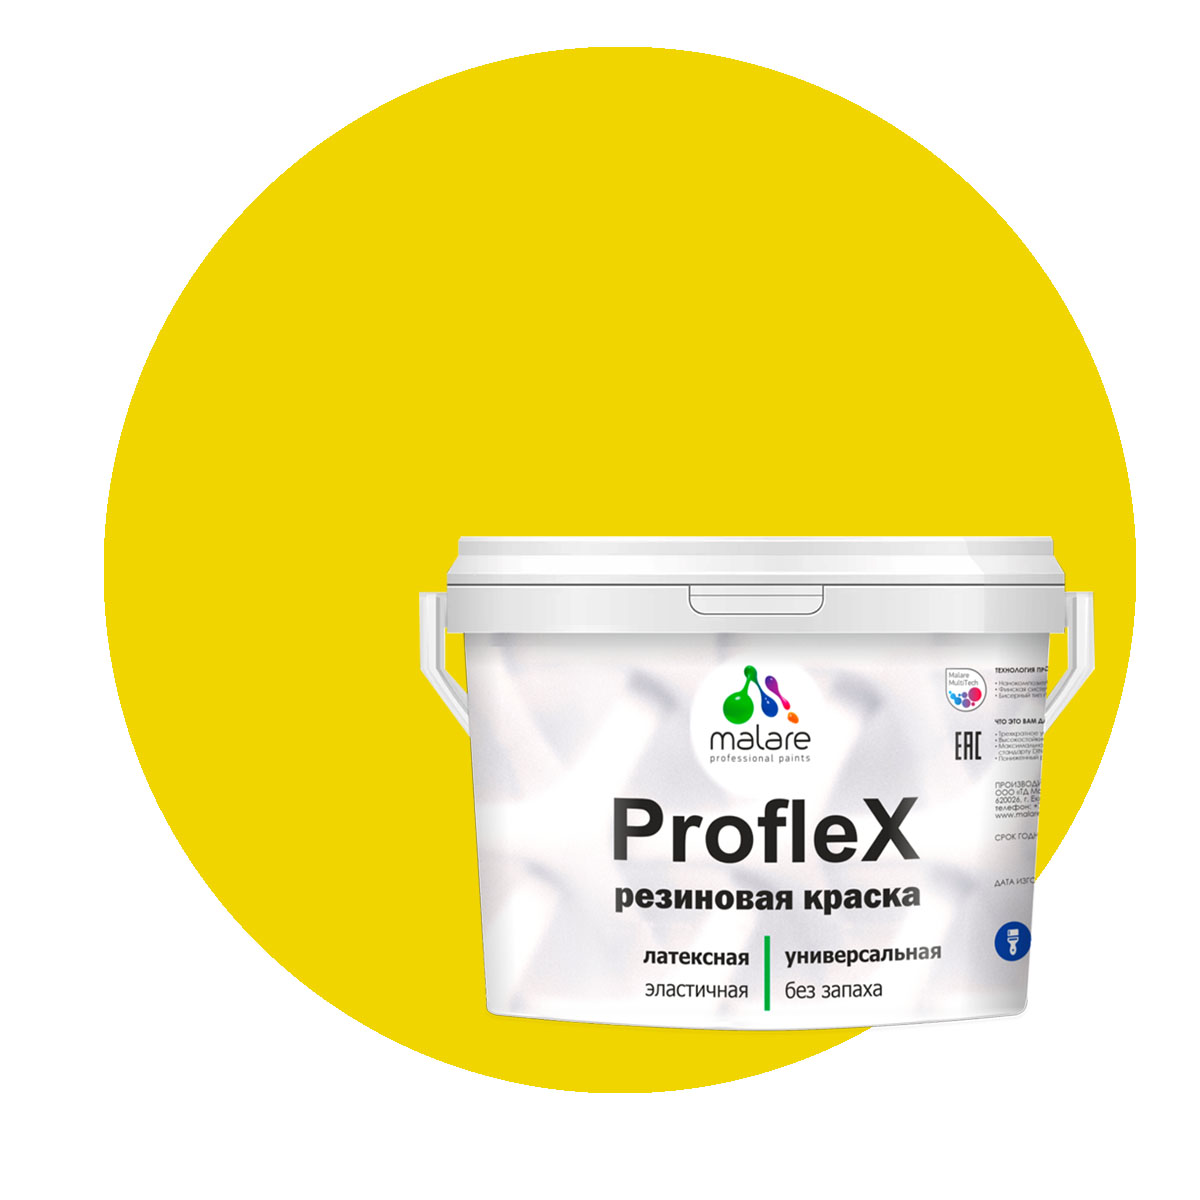 Краска Malare ProfleX для фасадов, интерьера, мебели, весенний адонис, 10 кг. щелочной очиститель фасадов зданий plex